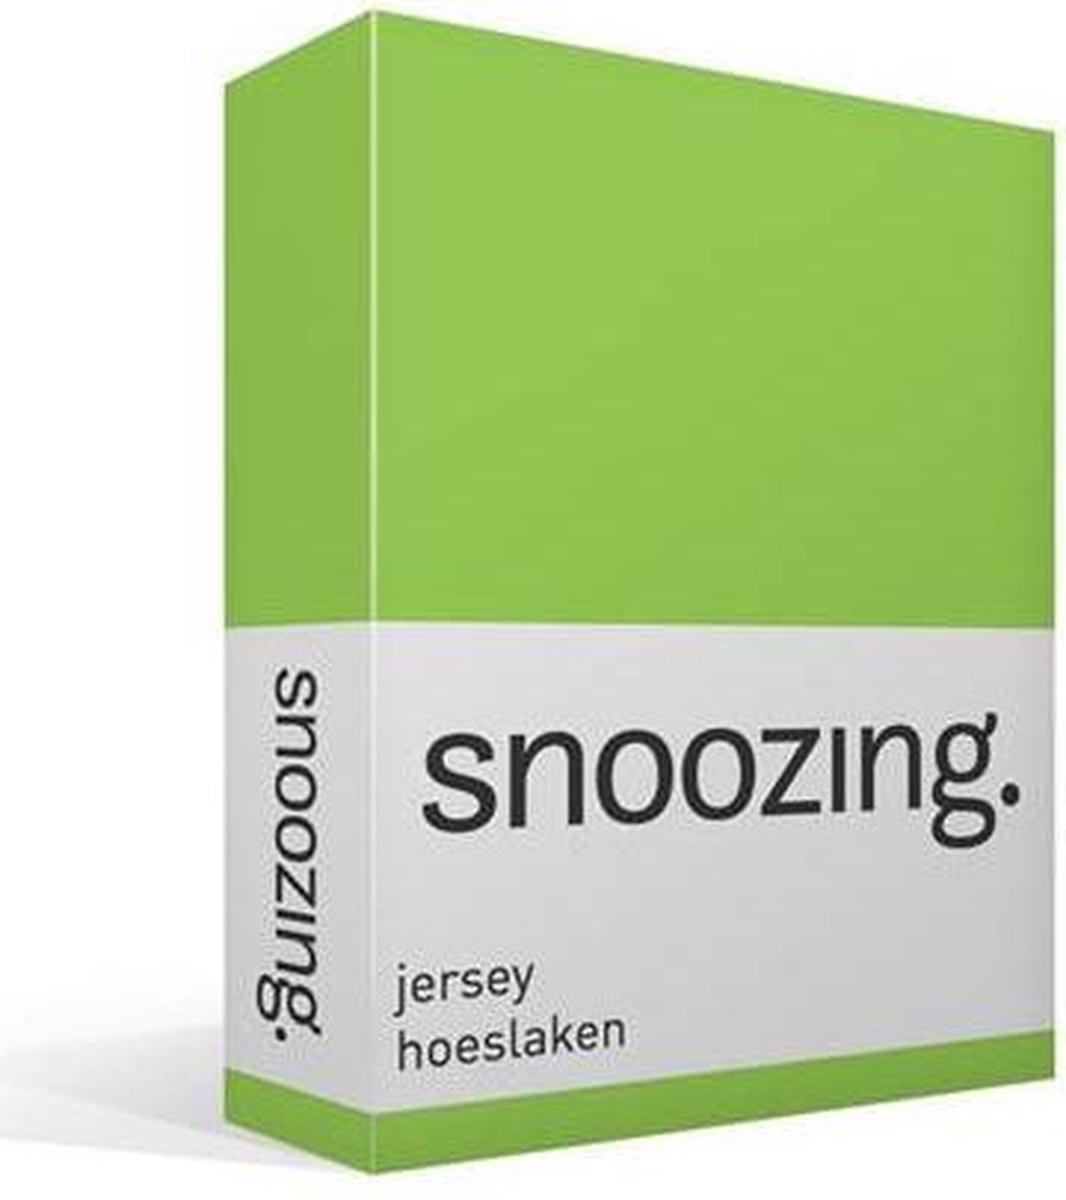 Snoozing Jersey Hoeslaken - 100% Gebreide Jersey Katoen - Lits-jumeaux (200x200 Cm) - Lime - Groen